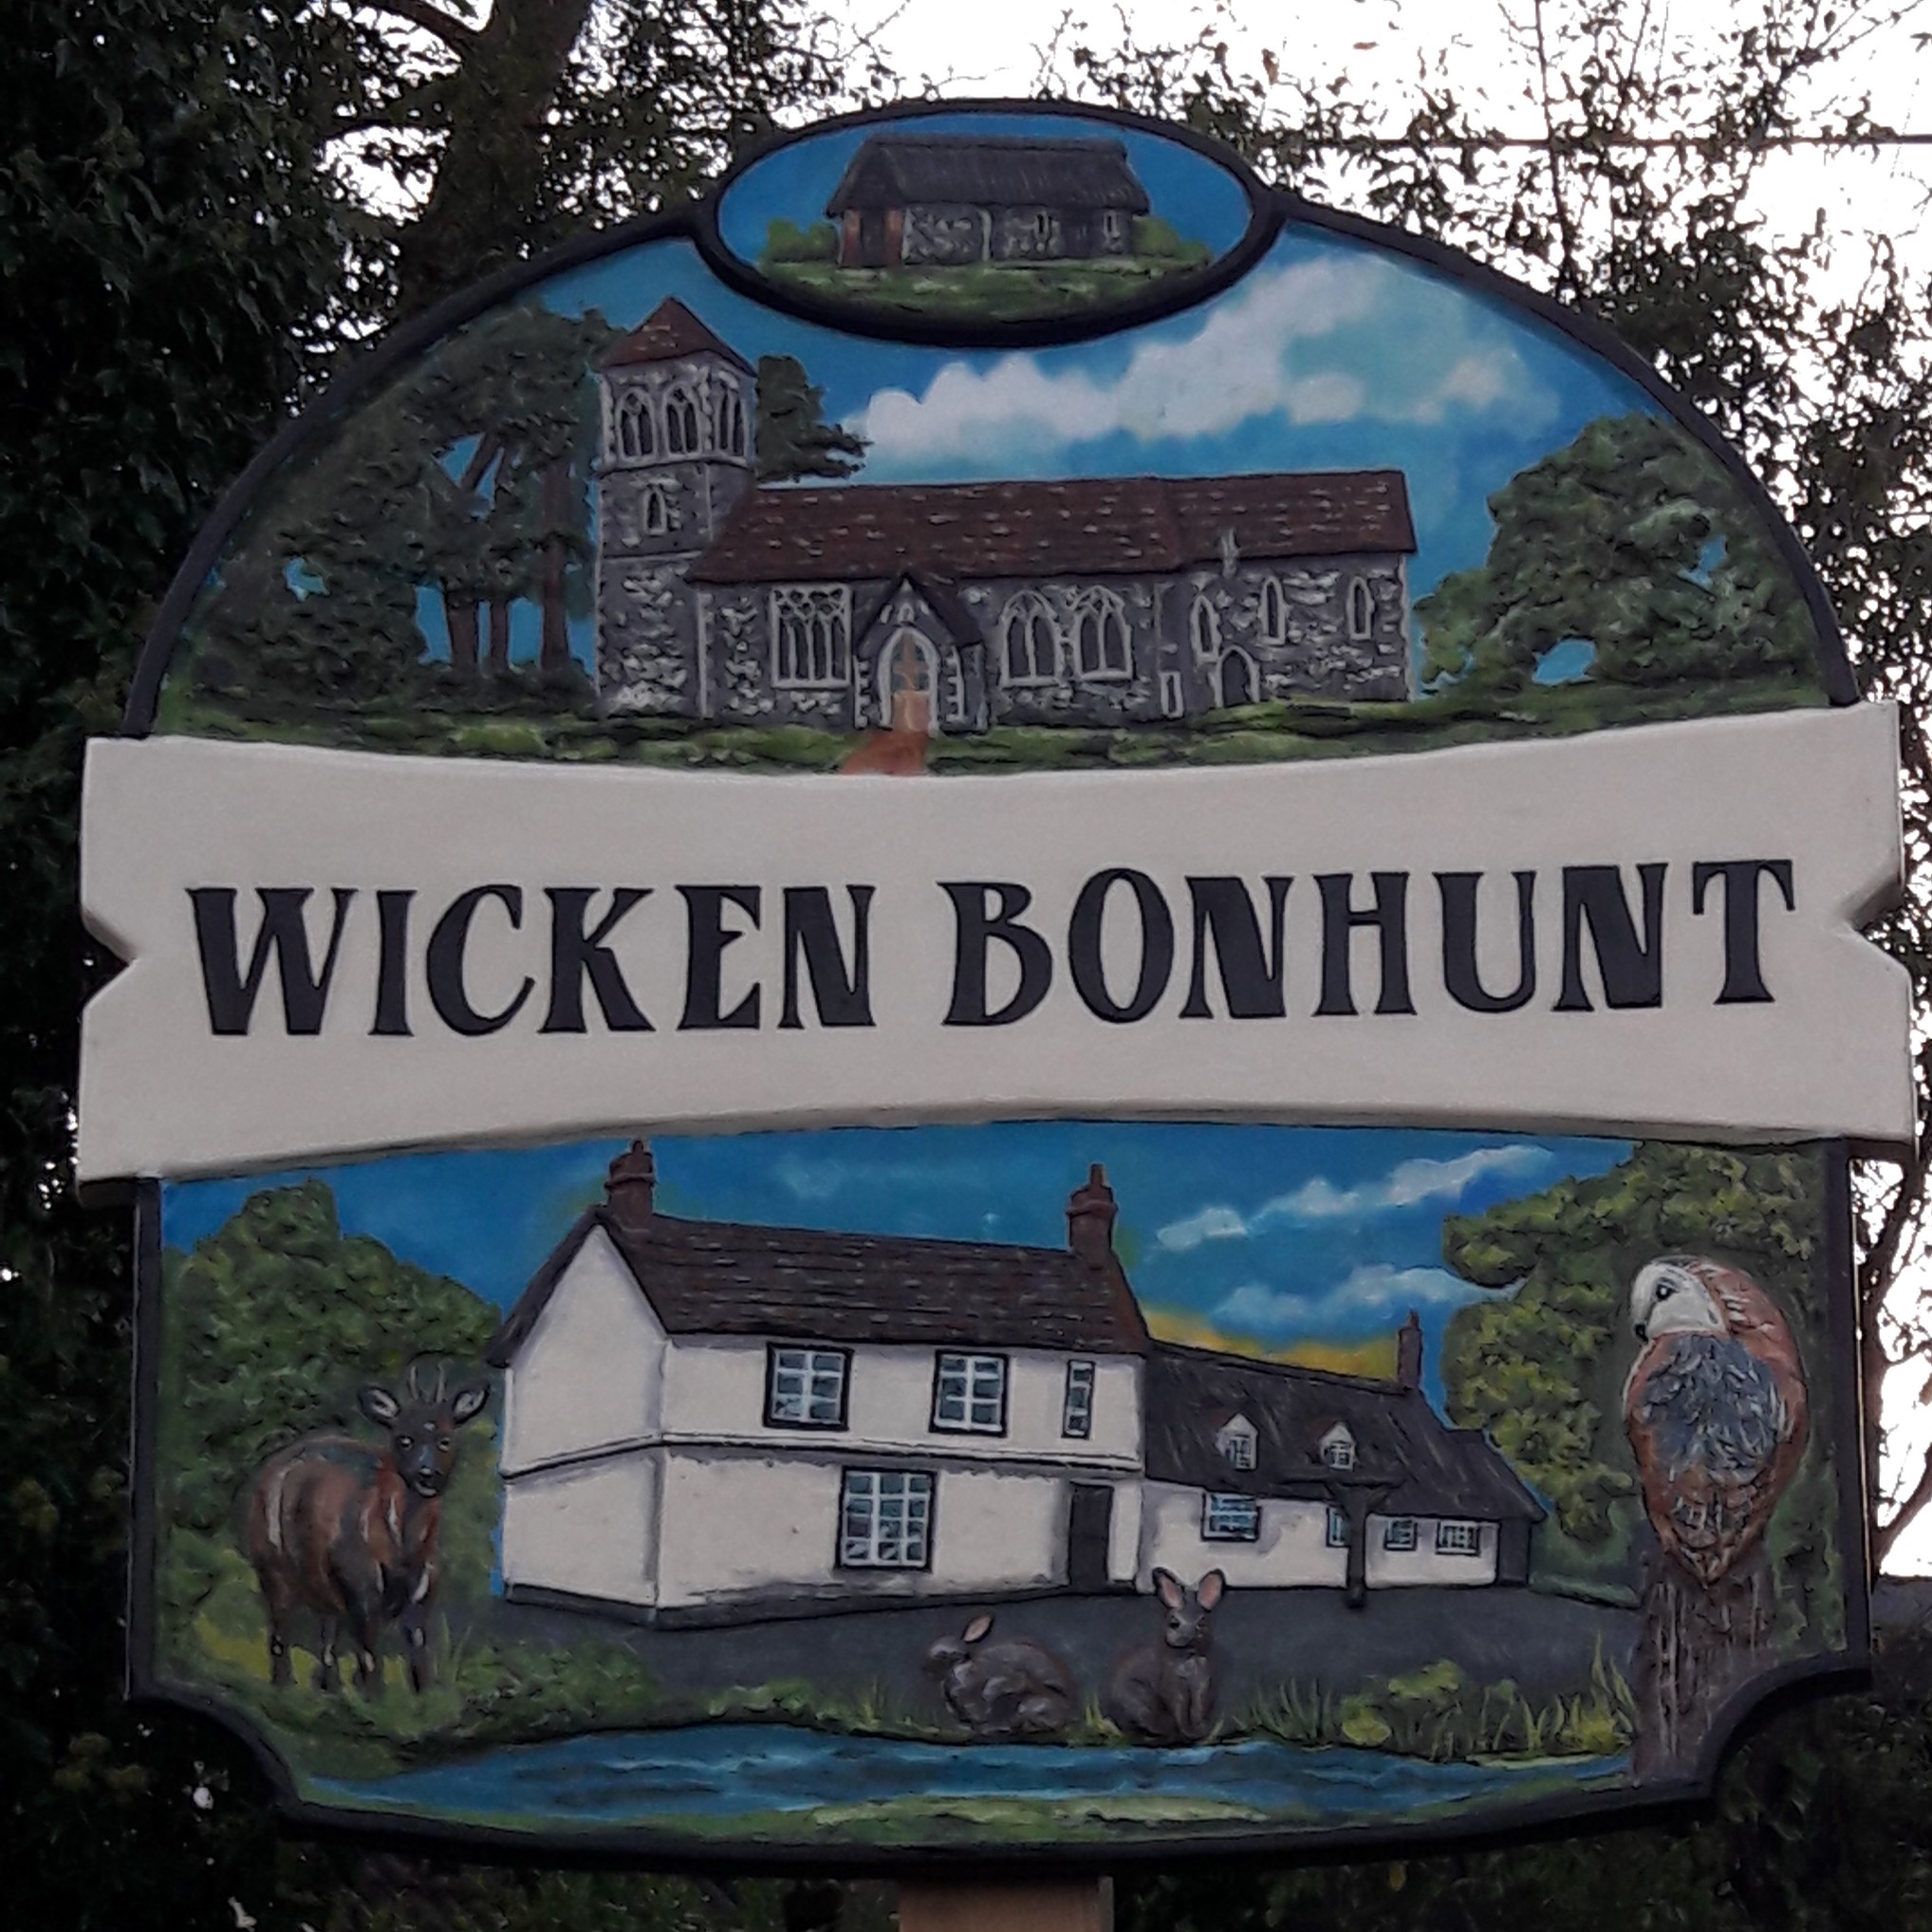 Wicken Bonhunt Village